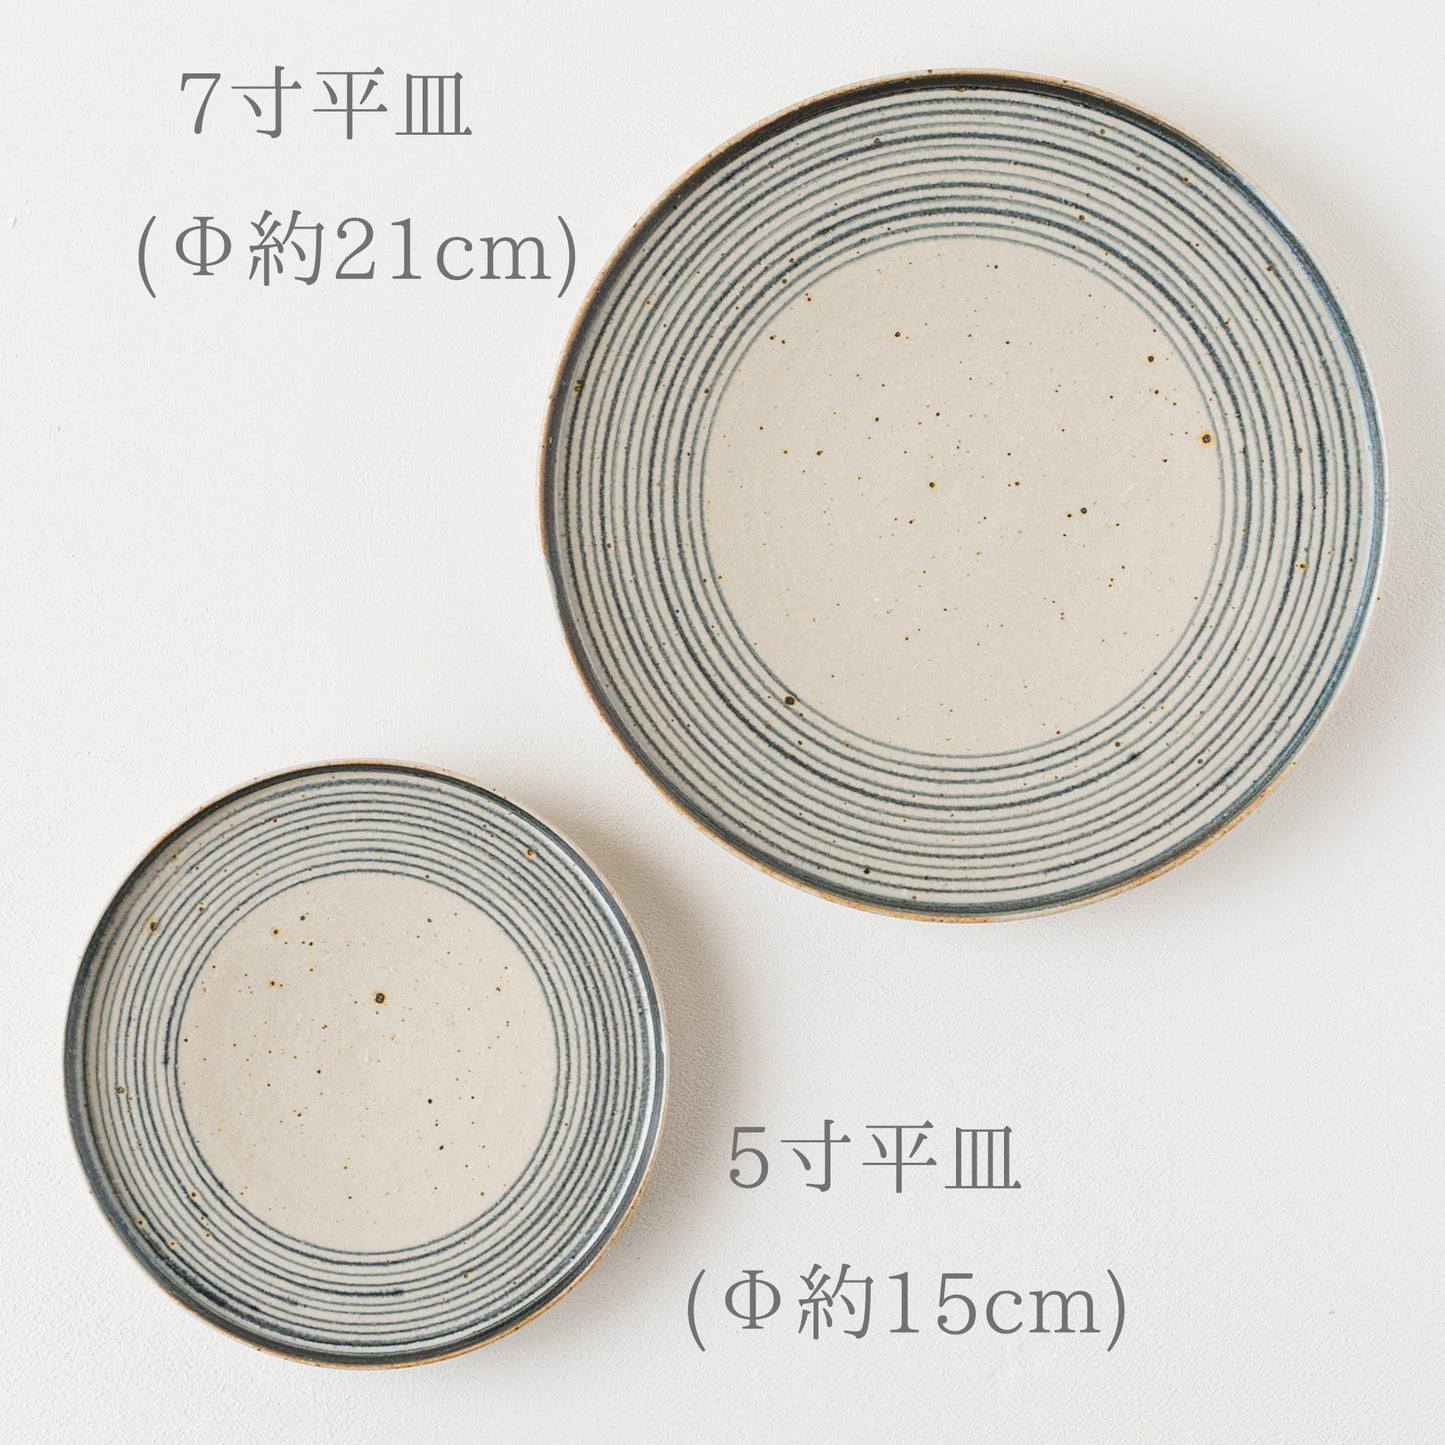 呉須の輪線が食卓を素敵に彩ってくれる冨本大輔さんの灰釉染付の平皿